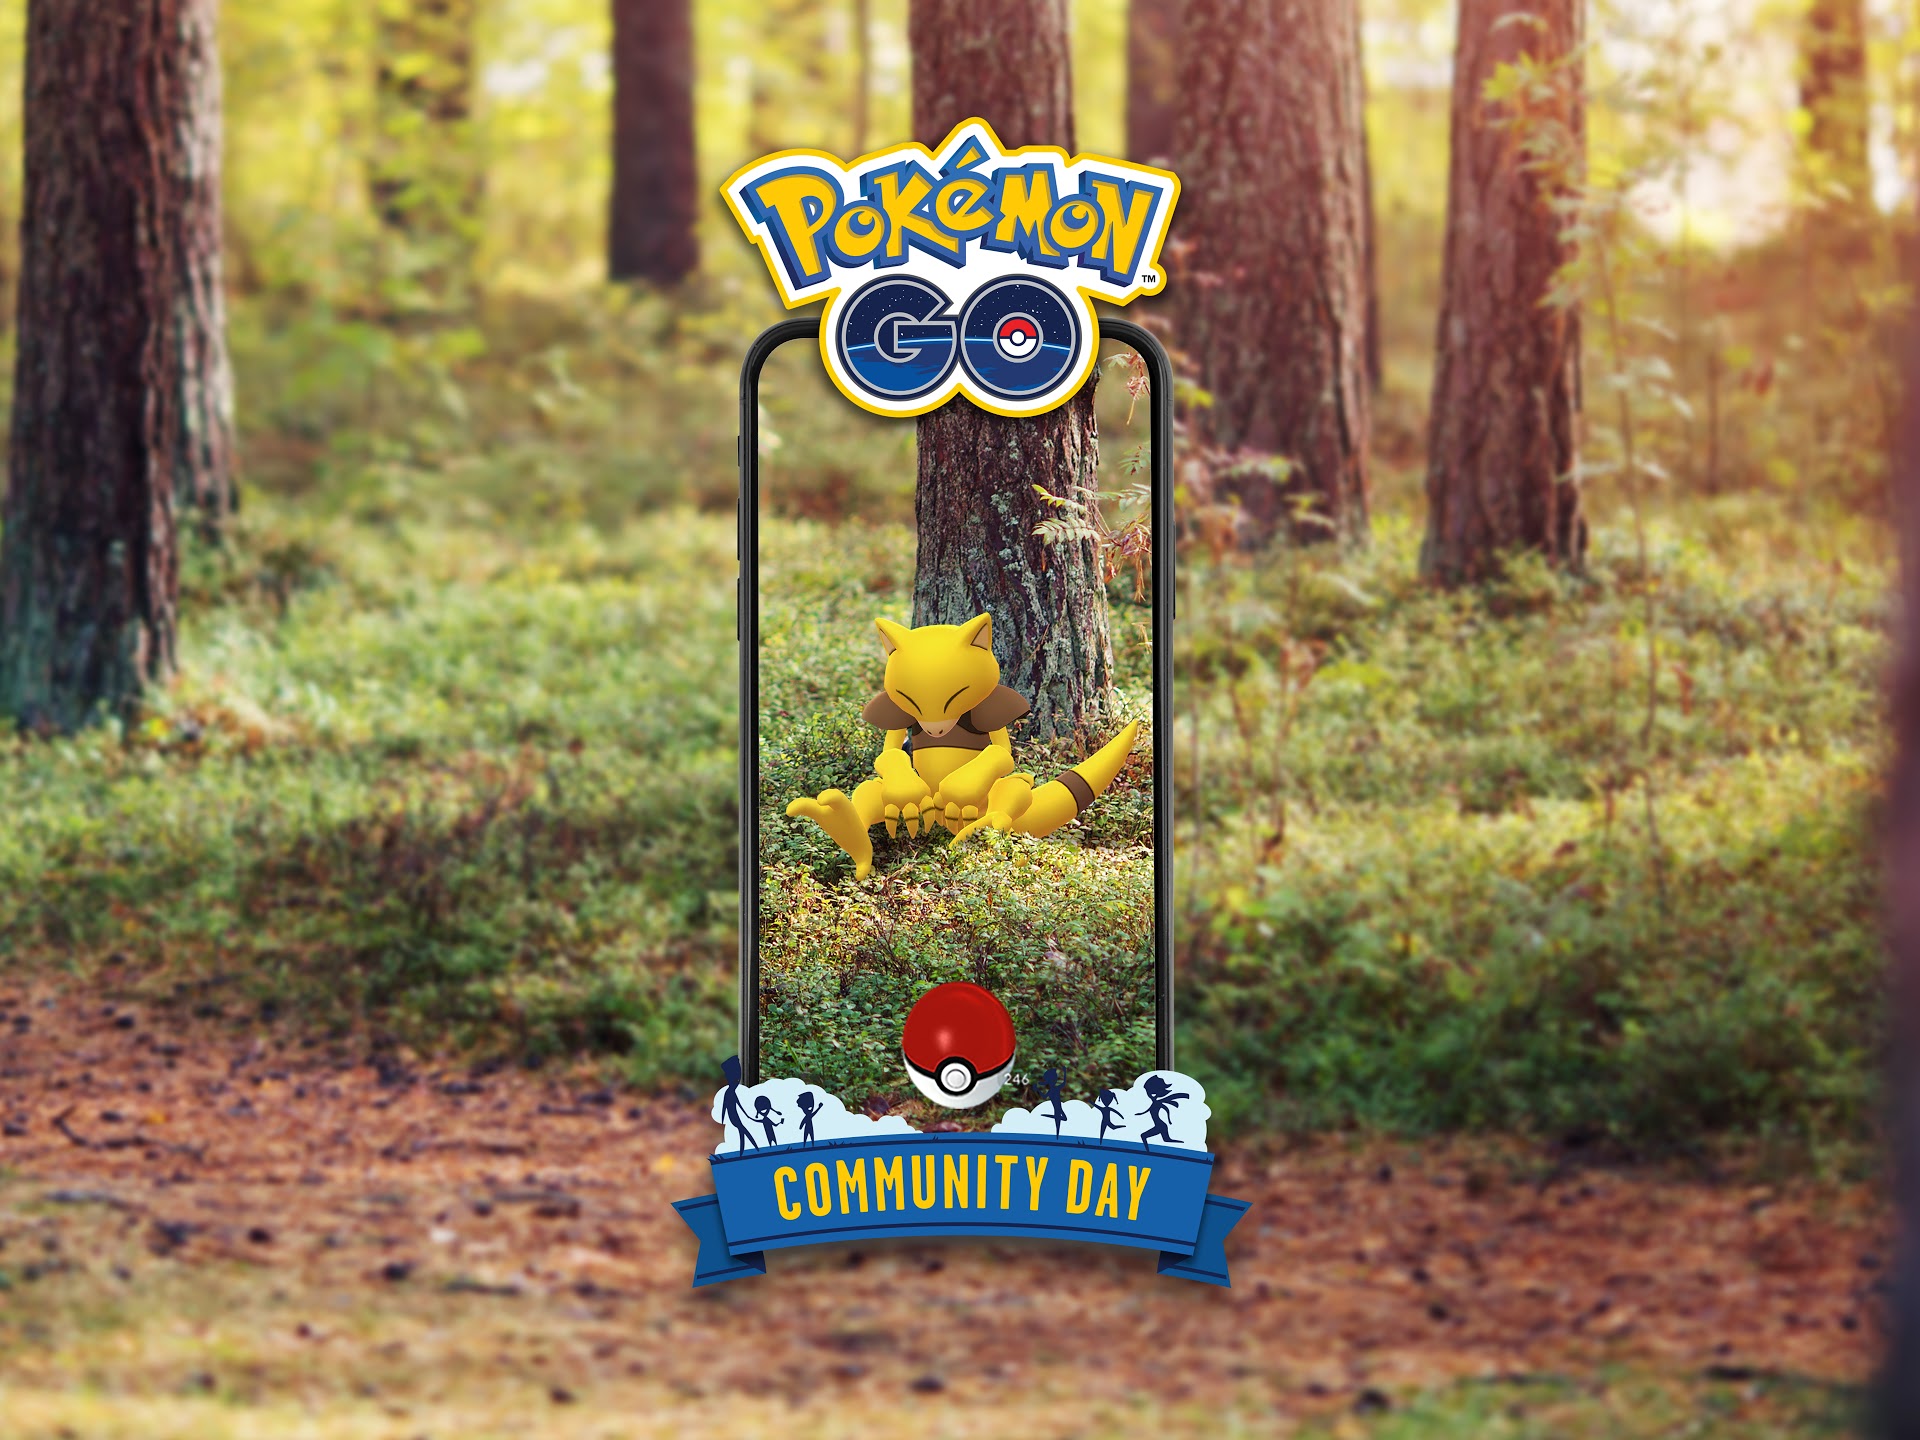 El día de la comunidad de marzo Abra de Pokemon Go ha sido pospuesto